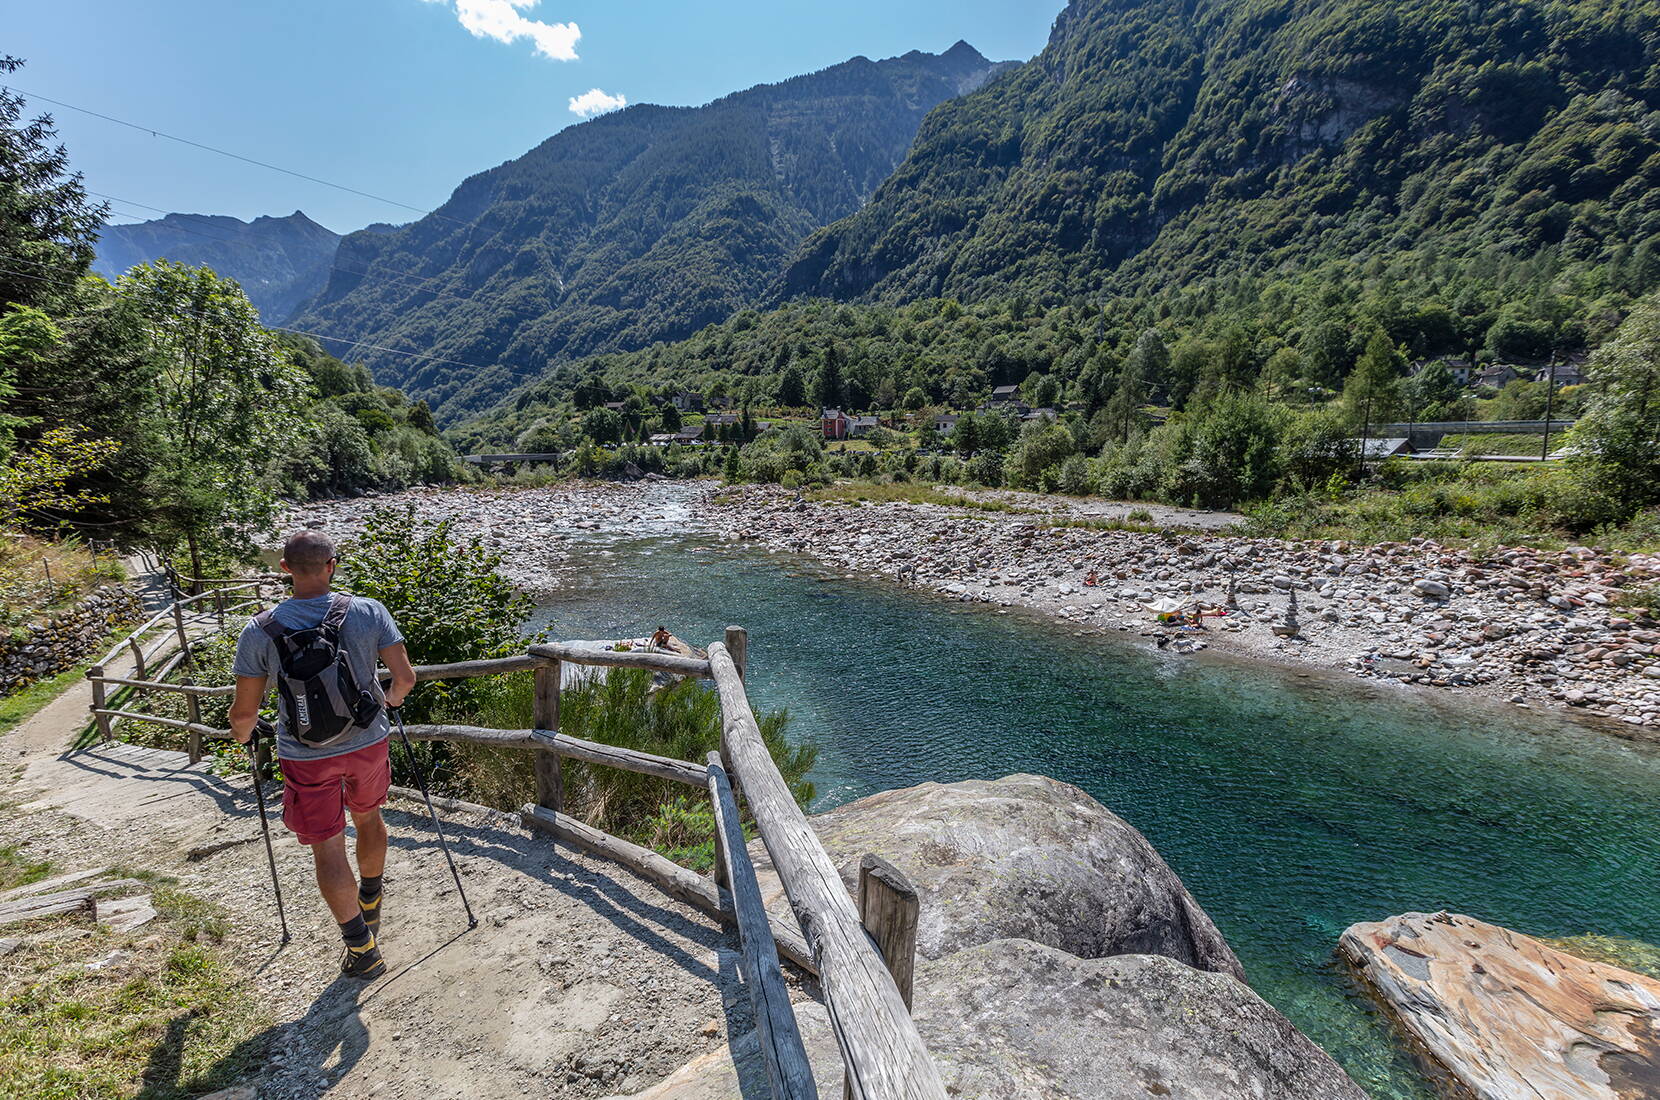 Escursione per famiglie Sentierone Verzasca. Una delle più belle escursioni del Ticino, che si snoda lungo la Verzasca attraverso l'intera valle fino a Sonogno.